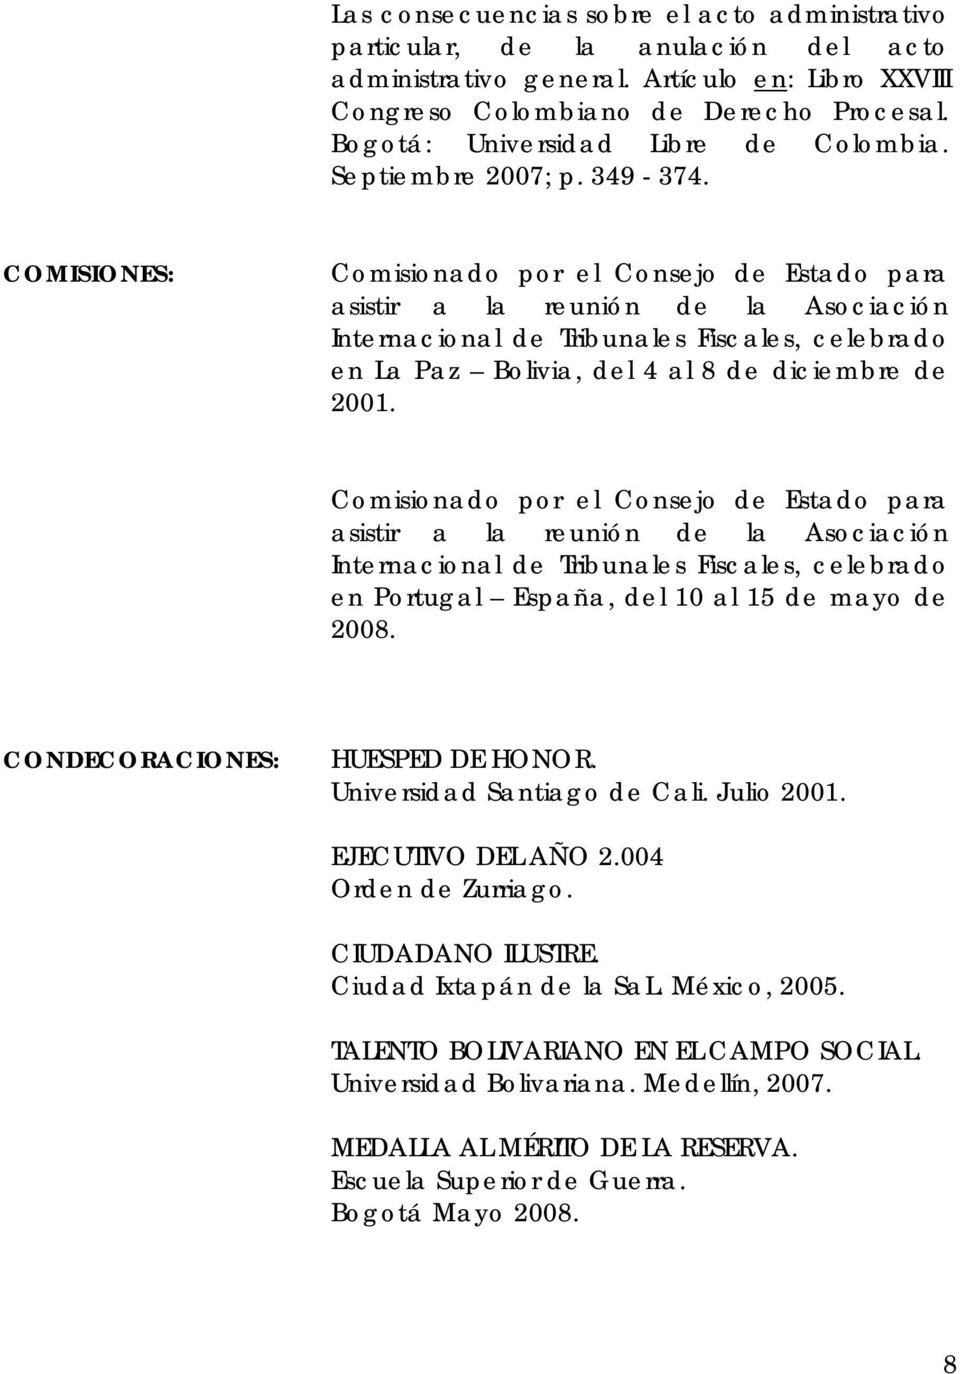 COMISIONES: Comisionado por el Consejo de Estado para asistir a la reunión de la Asociación Internacional de Tribunales Fiscales, celebrado en La Paz Bolivia, del 4 al 8 de diciembre de 2001.